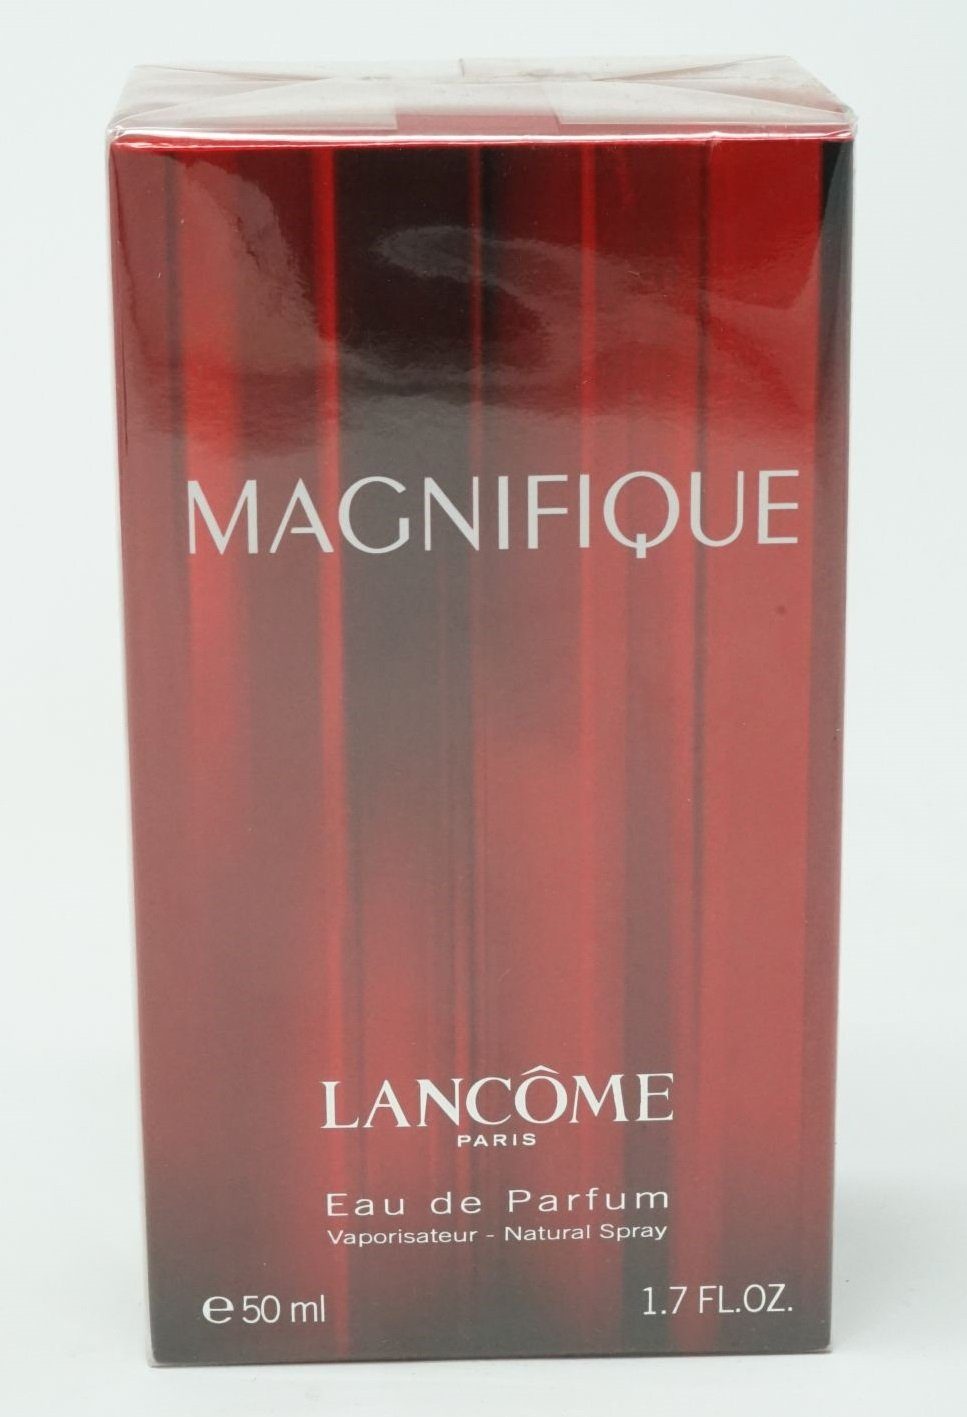 Spray LANCOME de Parfum Eau de Magnifique Lancome Parfum ml 50 Eau